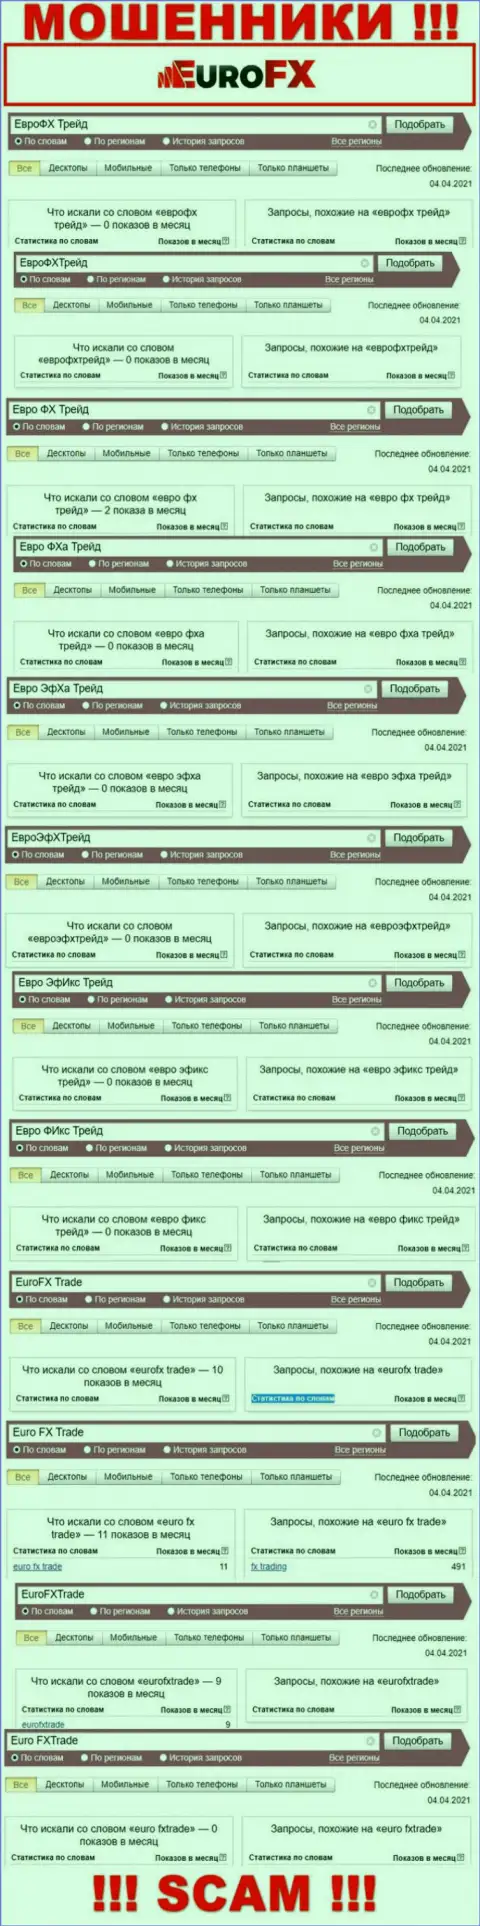 Скрин результатов онлайн-запросов по противозаконно действующей компании Евро ФХ Трейд